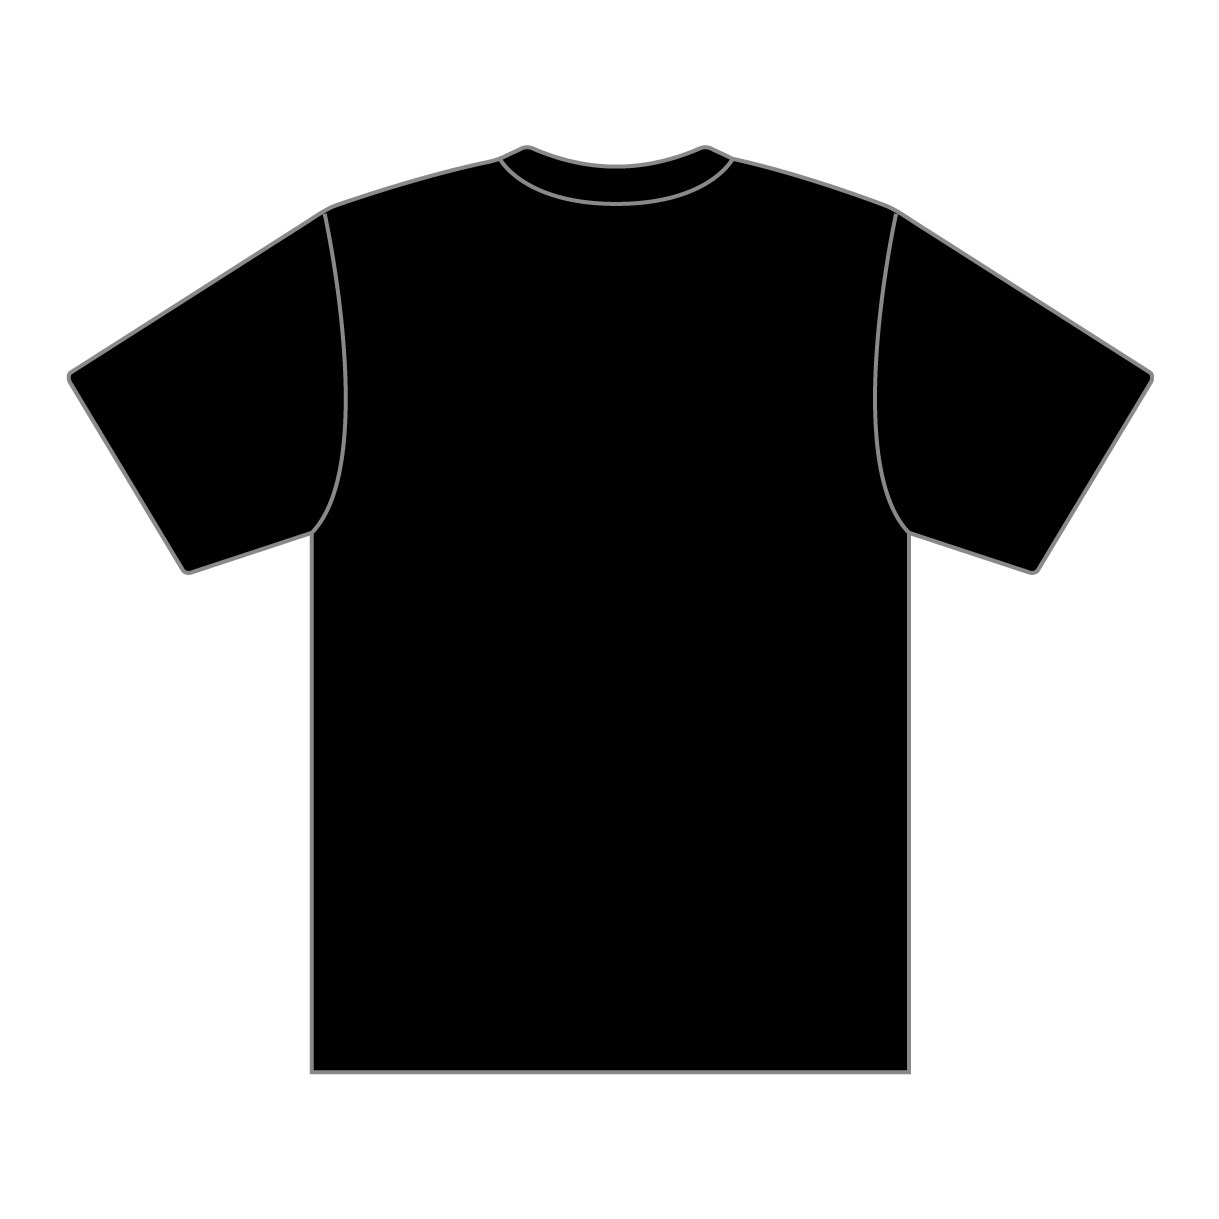 SKY Fes 門秀彦デザインTシャツ(ブラック) | HY